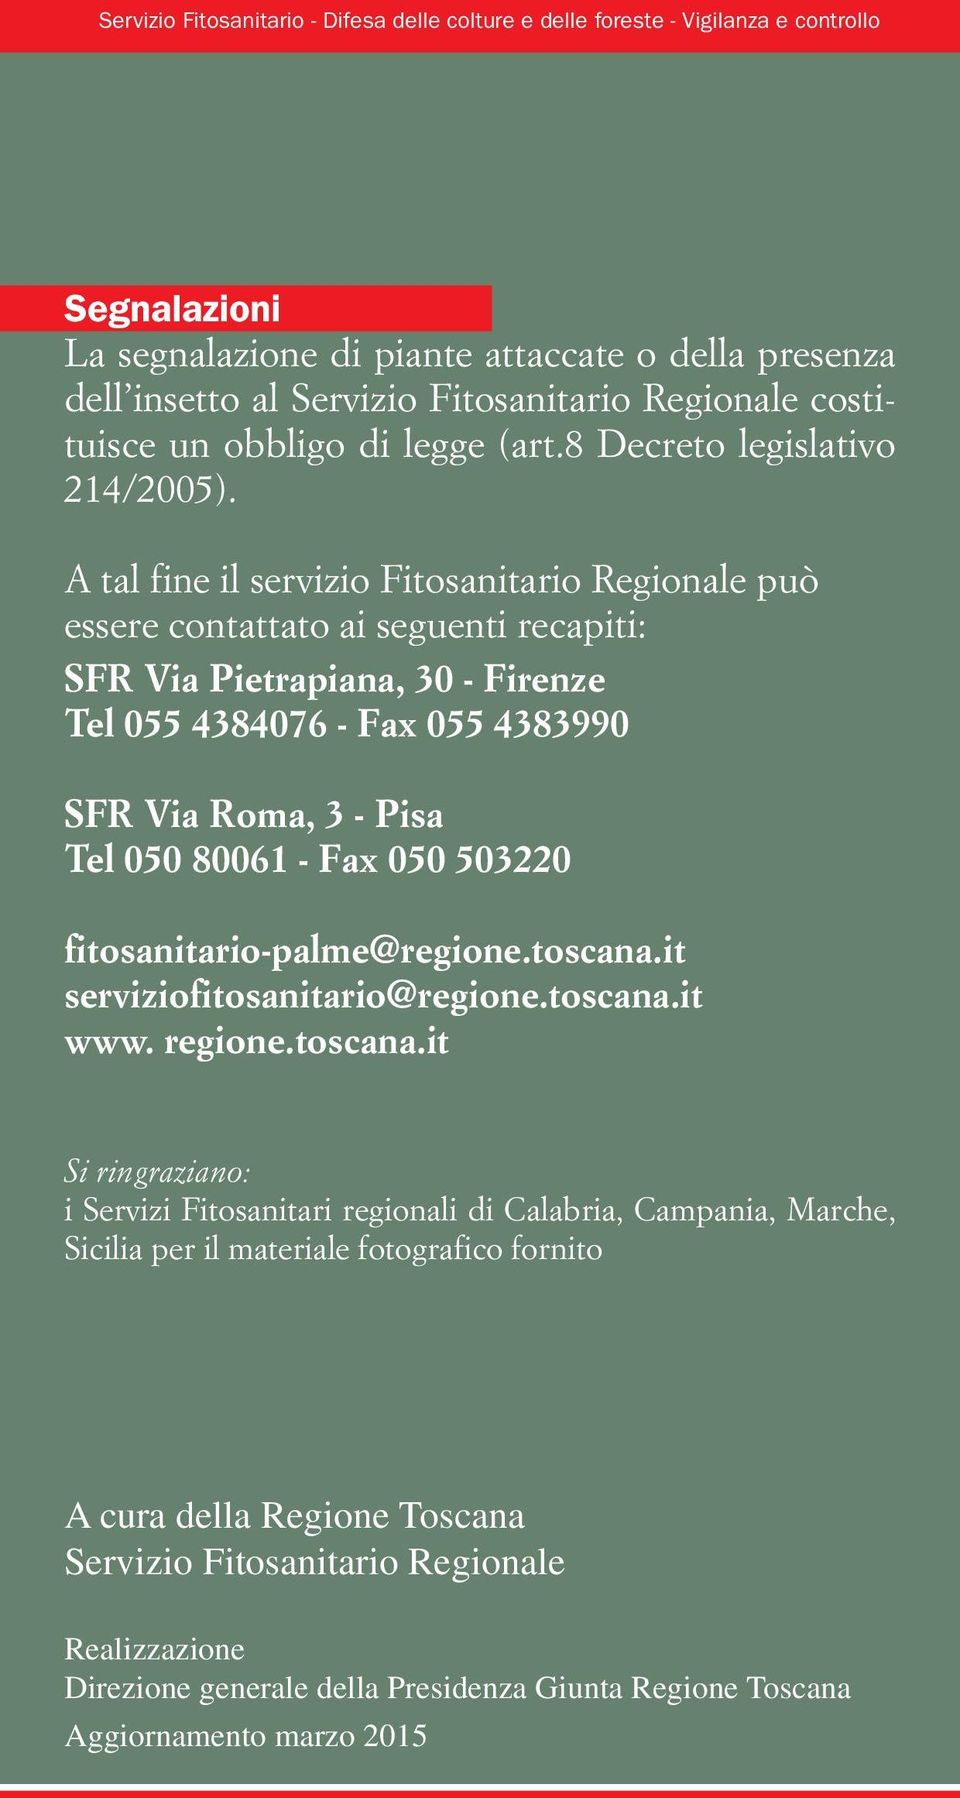 A tal fine il servizio Fitosanitario Regionale può essere contattato ai seguenti recapiti: SFR Via Pietrapiana, 30 - Firenze Tel 055 4384076 - Fax 055 4383990 SFR Via Roma, 3 - Pisa Tel 050 80061 -